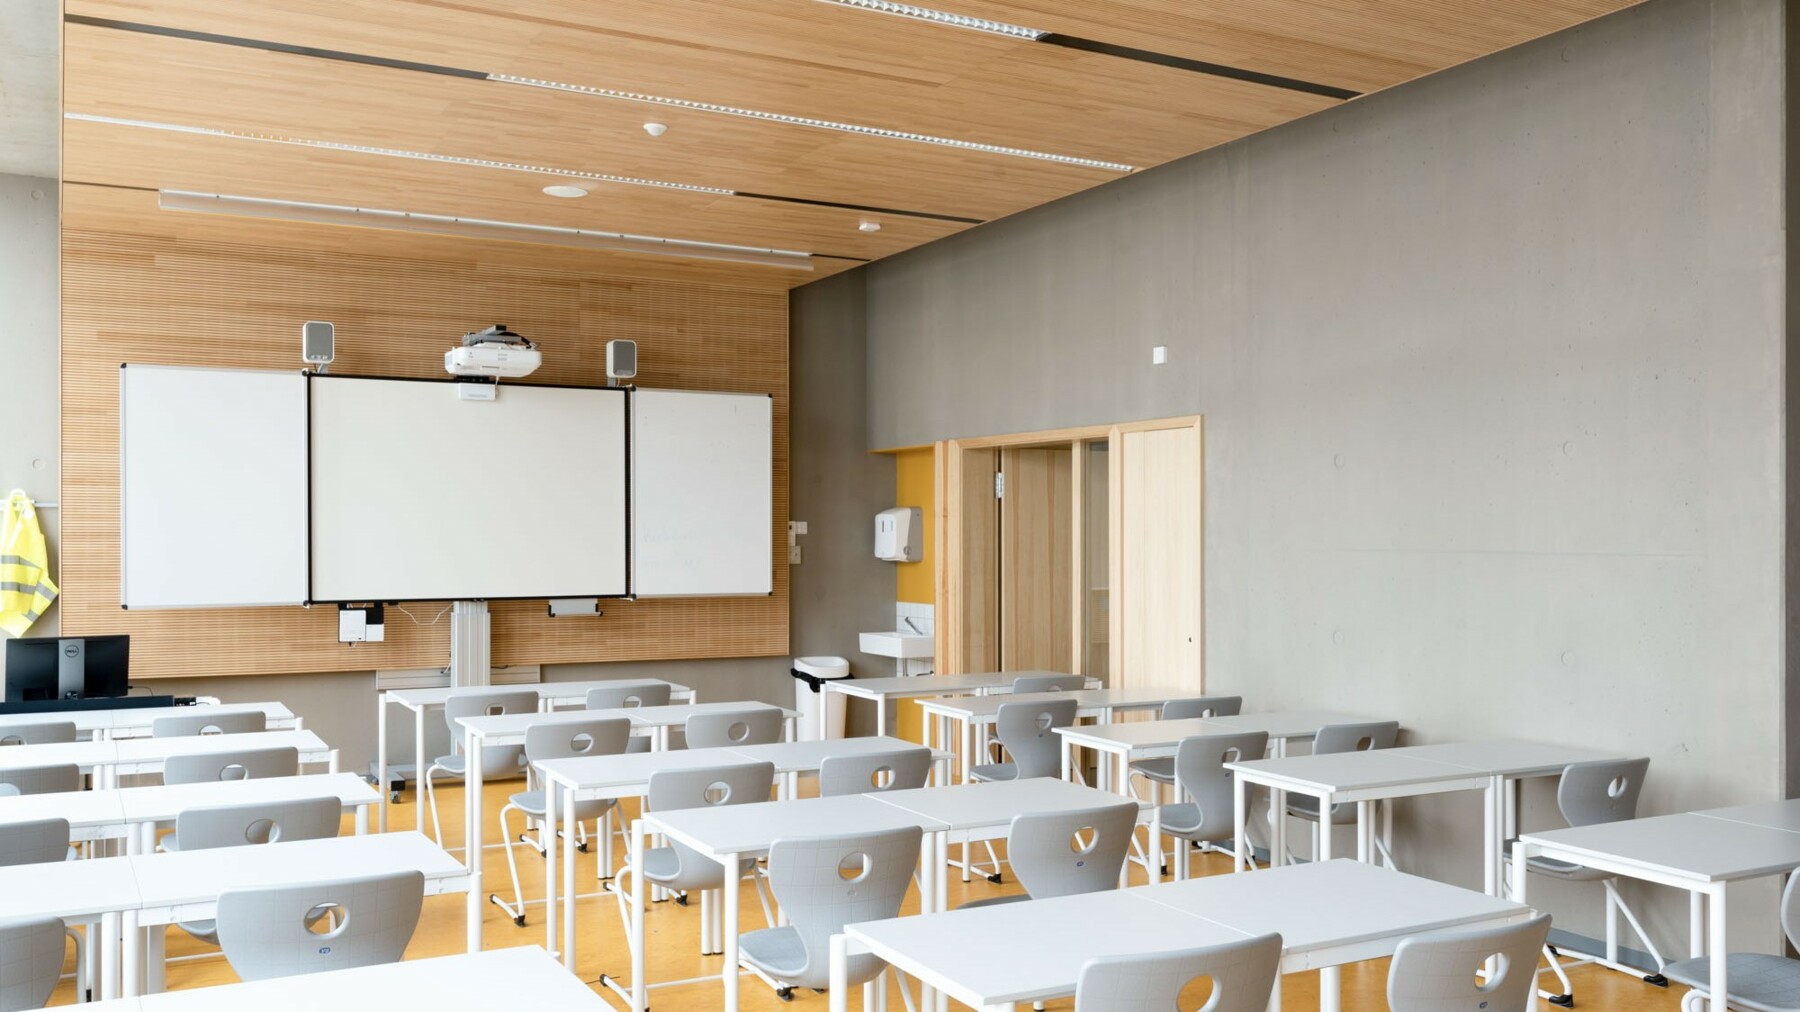 Die Deckenverkleidung aus Holz mit LIGNO® Akustik light sorgt sorgt in diesem Klassenzimmer der Schule Lycée Vauban in Luxemburg für optimale Raumakustik.